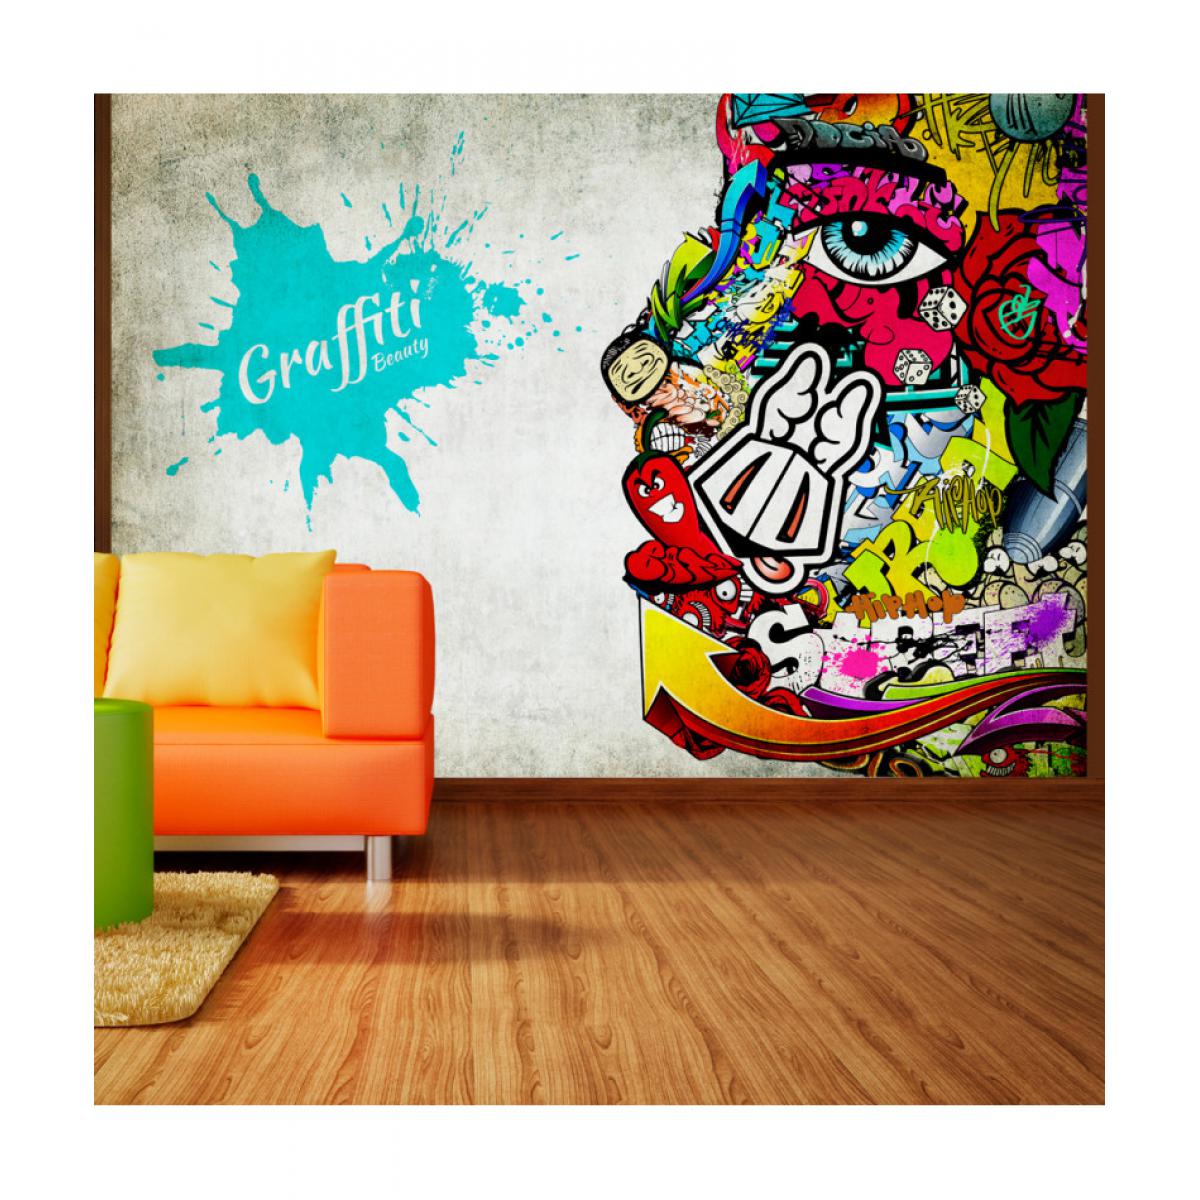 Artgeist - Papier peint - Graffiti beauty 250x175 - Papier peint